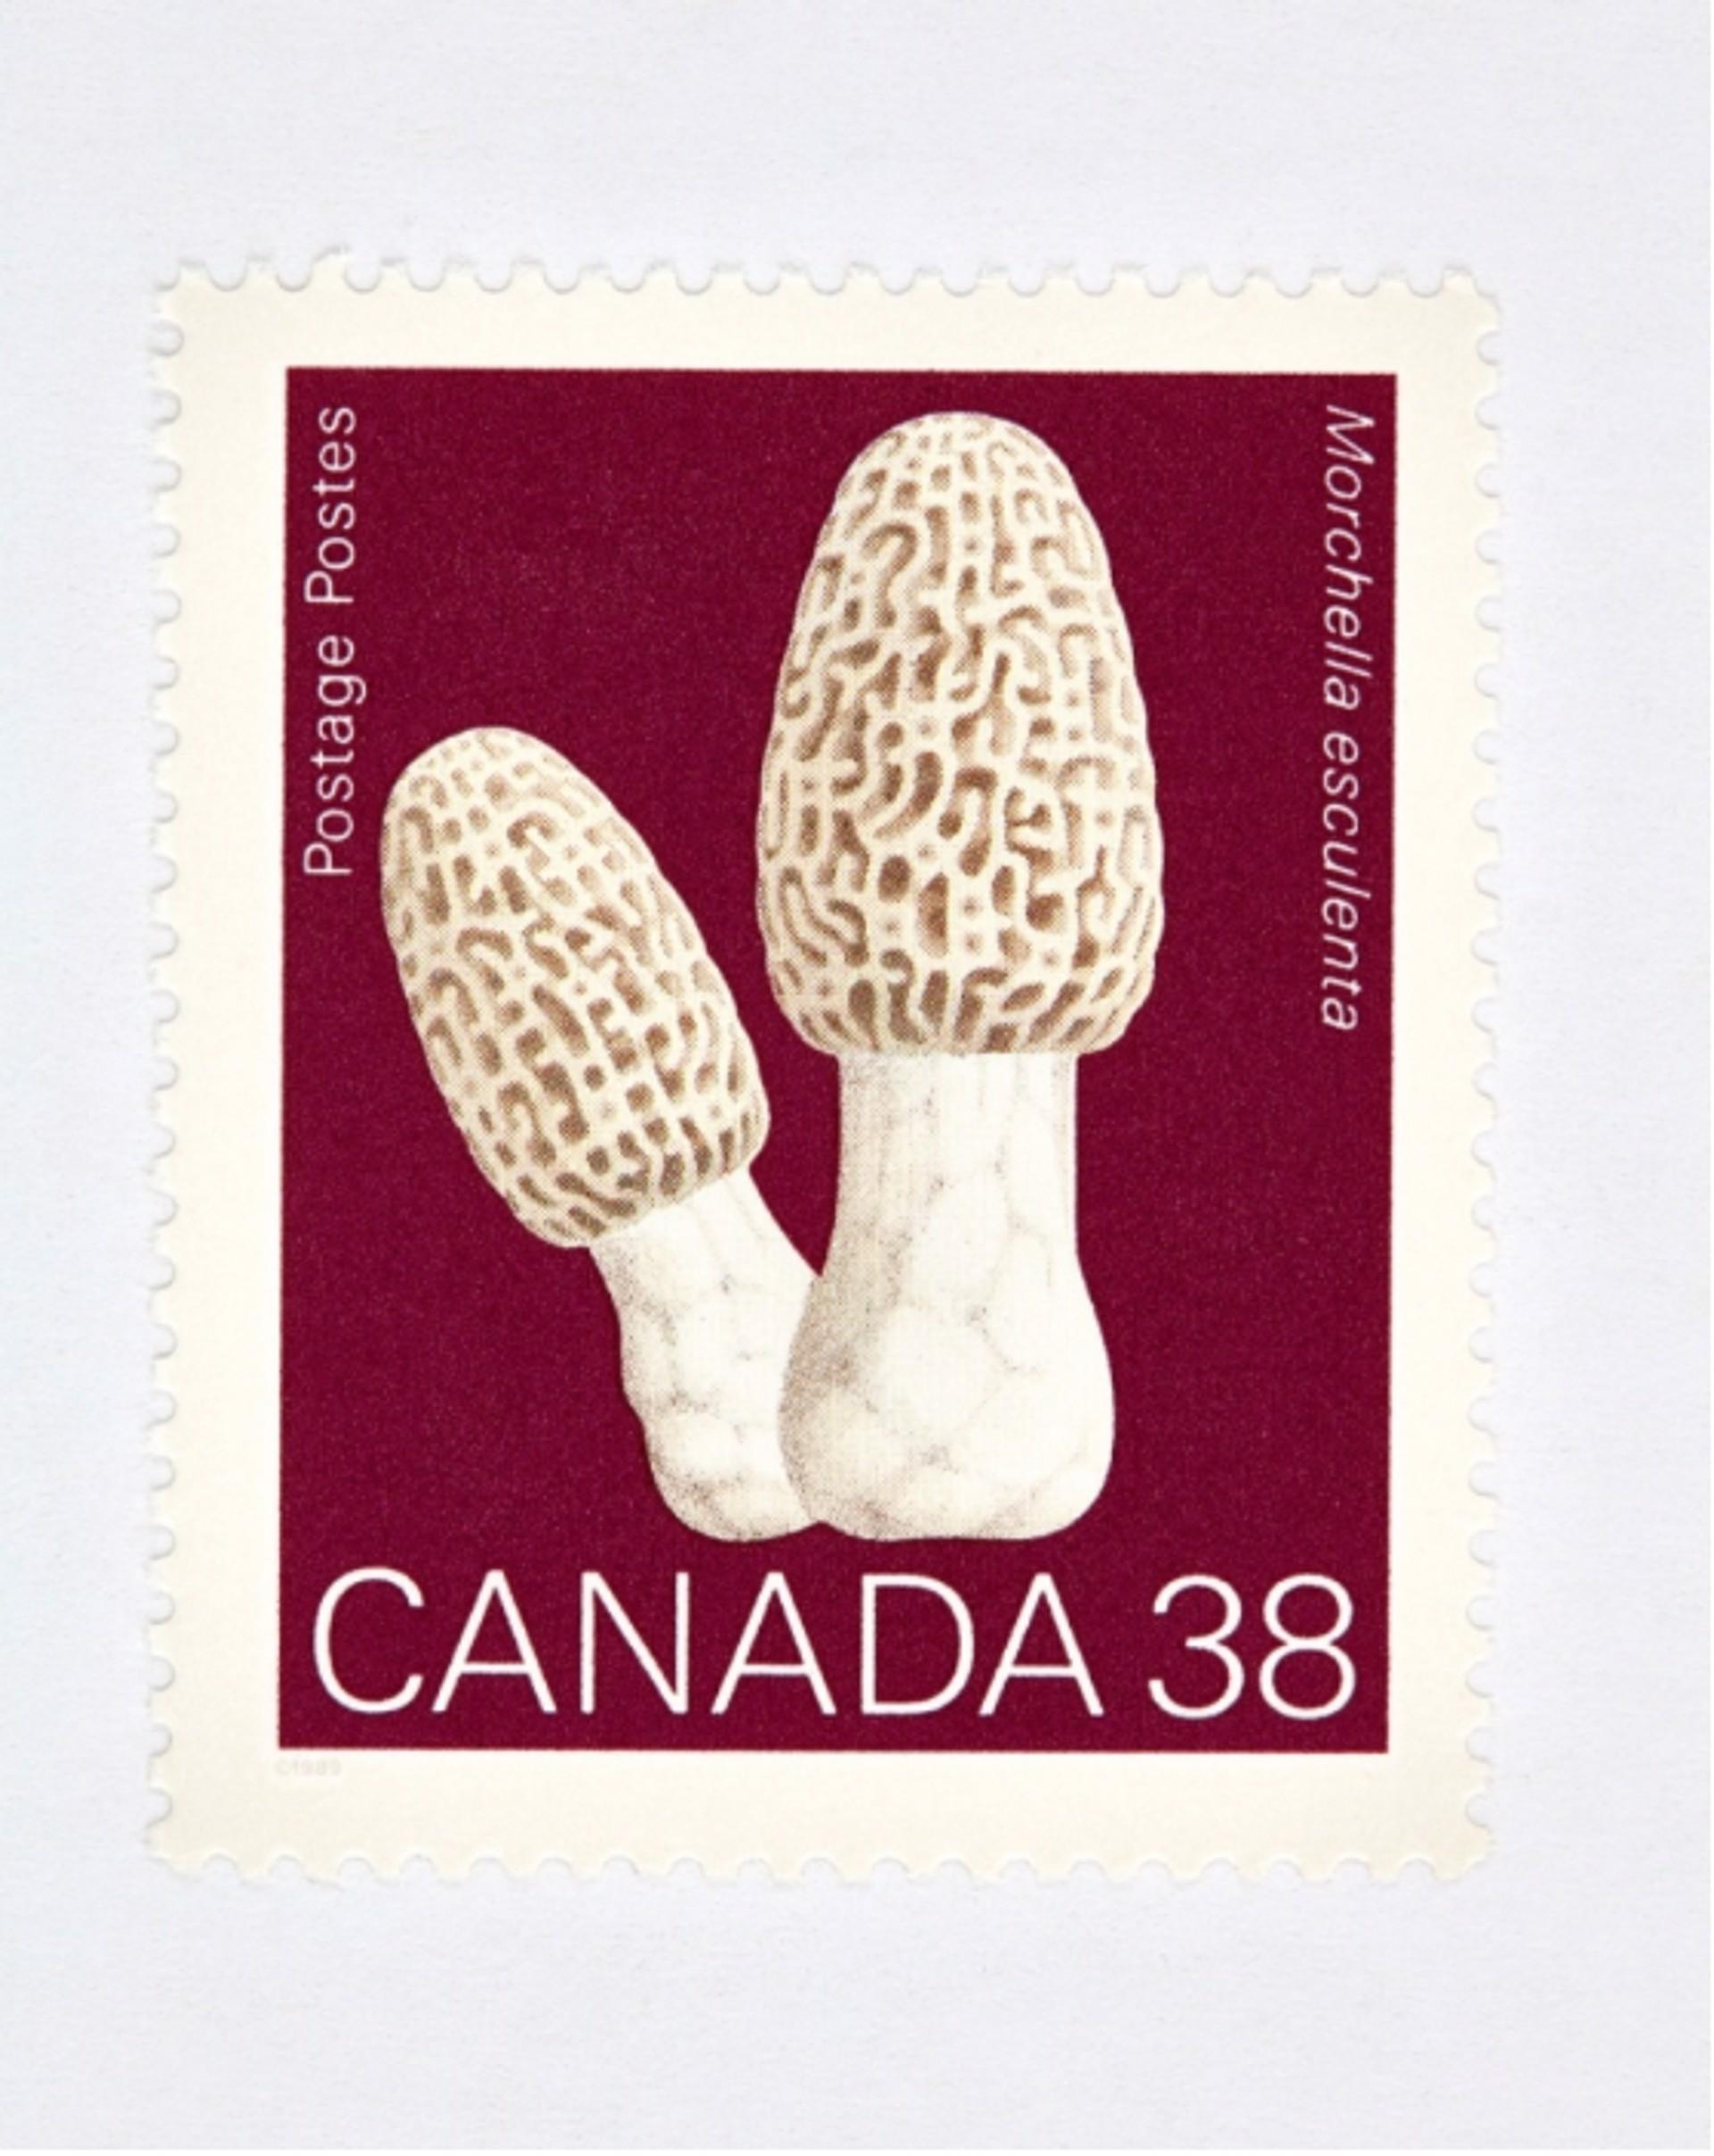 Kanada 38 Pilz (rot) 
Digitaler C-Print / Archivpigmentdruck
Auflage von 20 Stück pro Größe
Verfügbare Größen:
36 x 27

Die Serie "Collectible" beschäftigt sich auf Makroebene mit Münzen, Banknoten und Briefmarken. Diese Bilder werden mit der